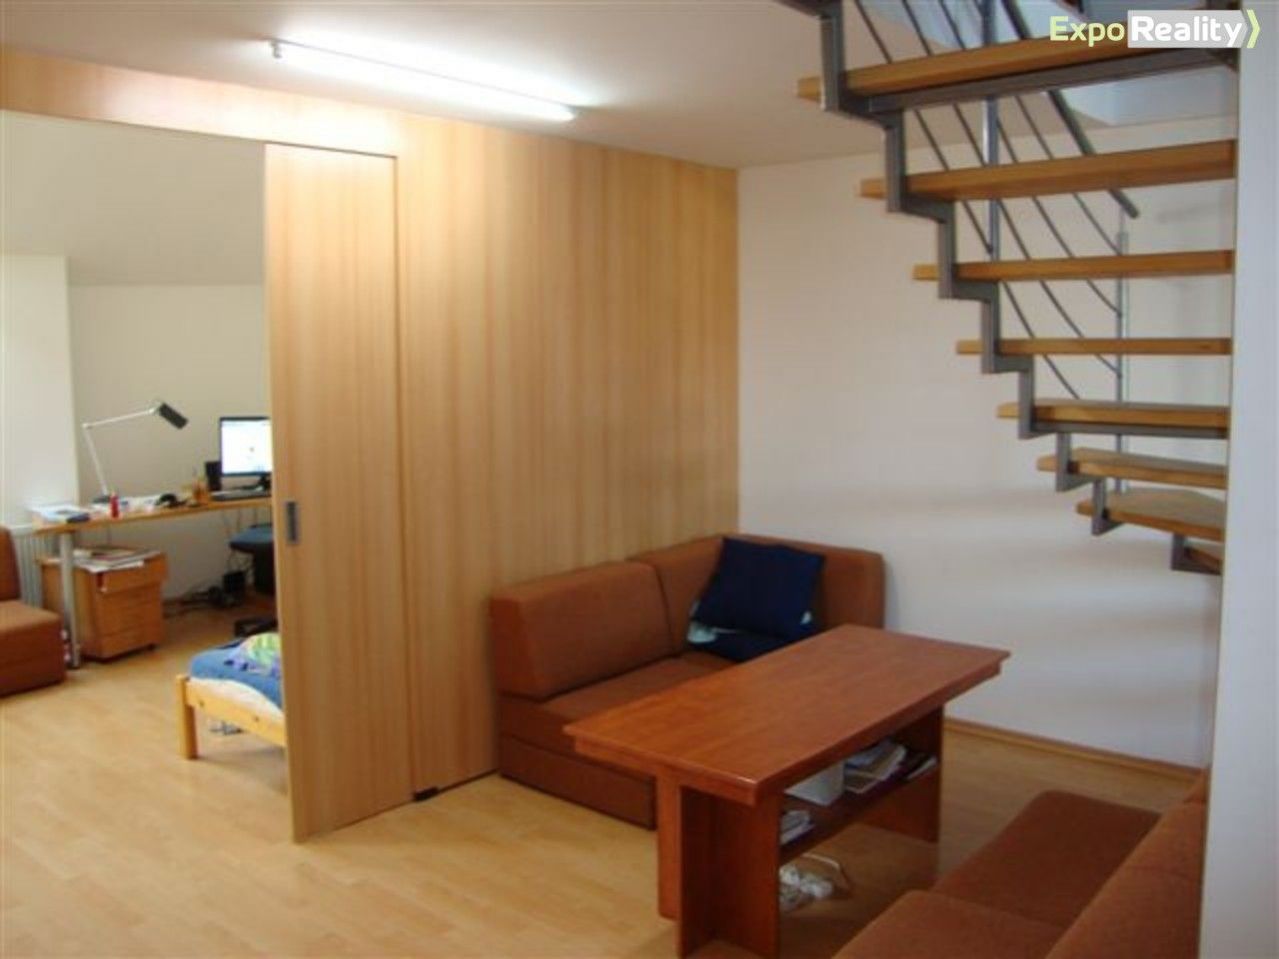 Prodej mezonetový byt v Brně, 3+kk, 90 m2, lodžie 5 m2  MEZONET